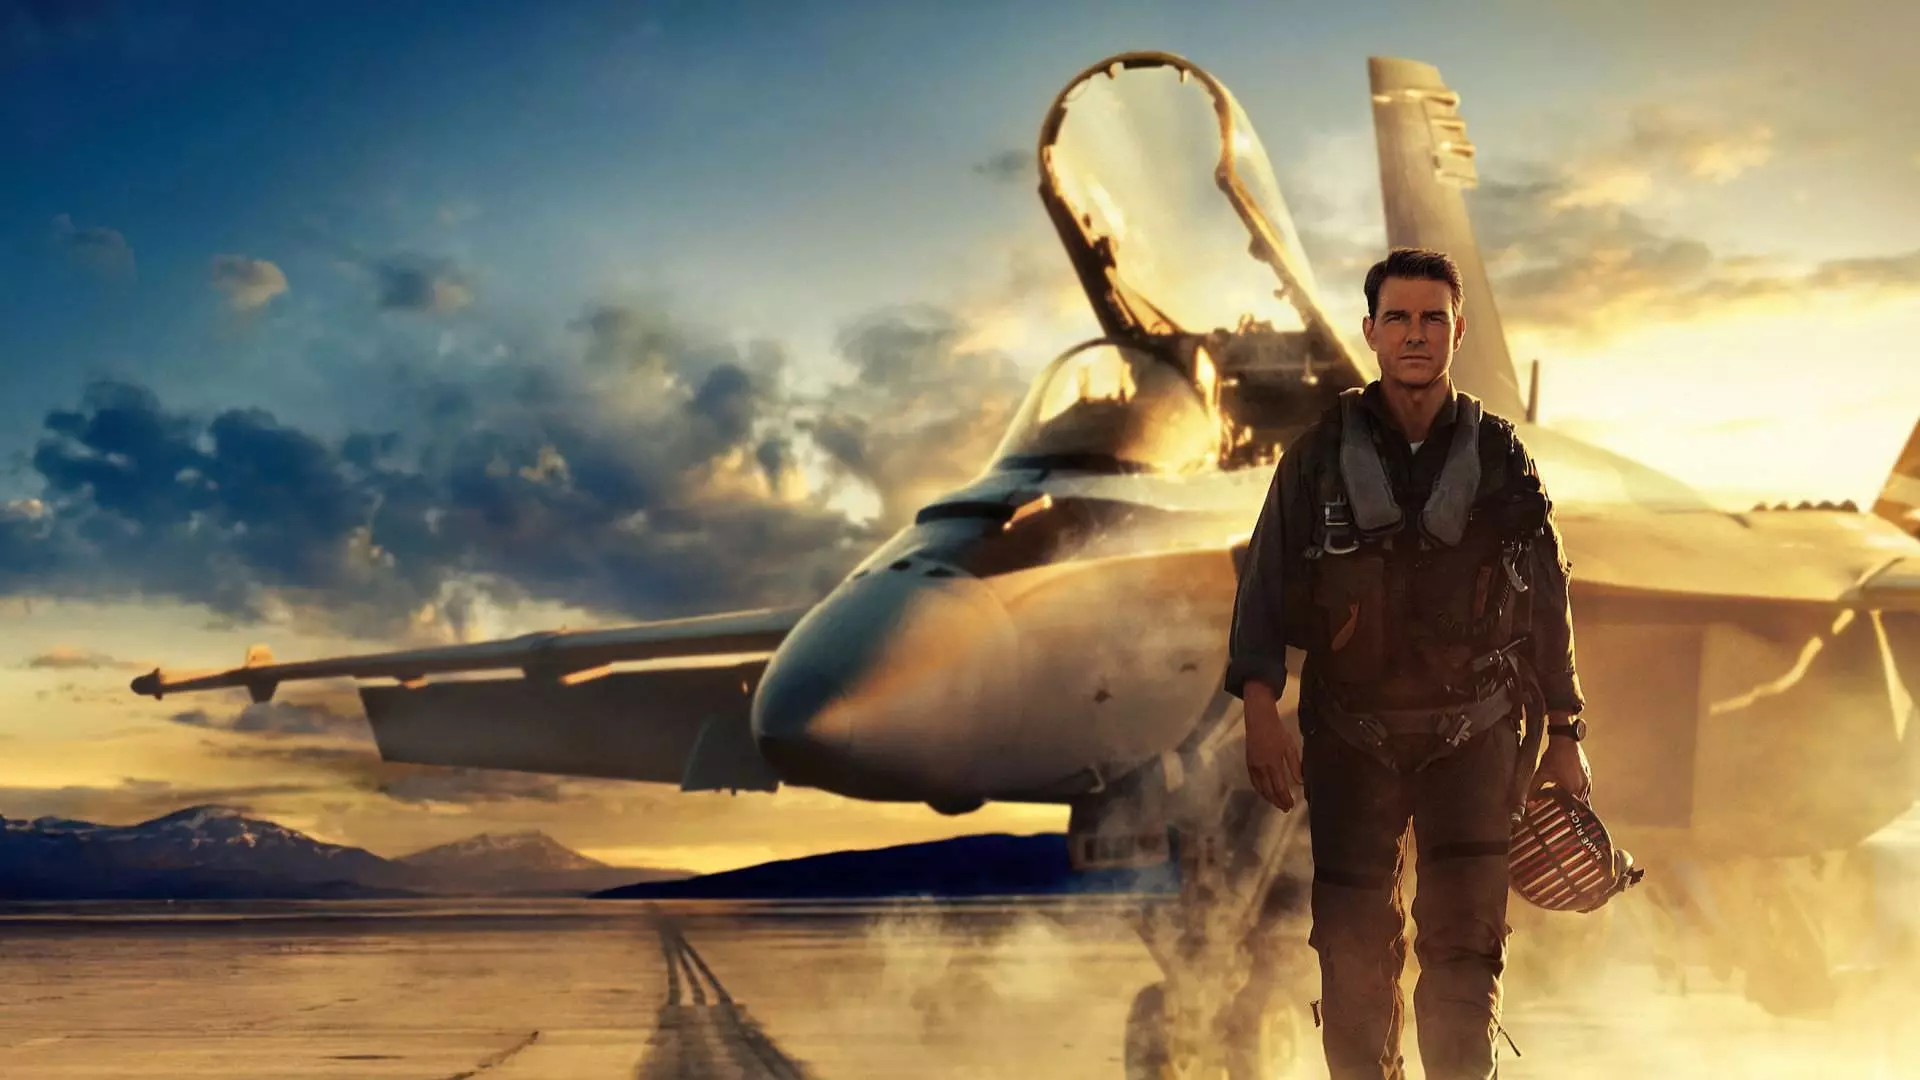 تام کروز در نقش ماوریک درکنار جنگنده F/A-18E سوپر هورنت در پوستر فیلم Top Gun: Maverick